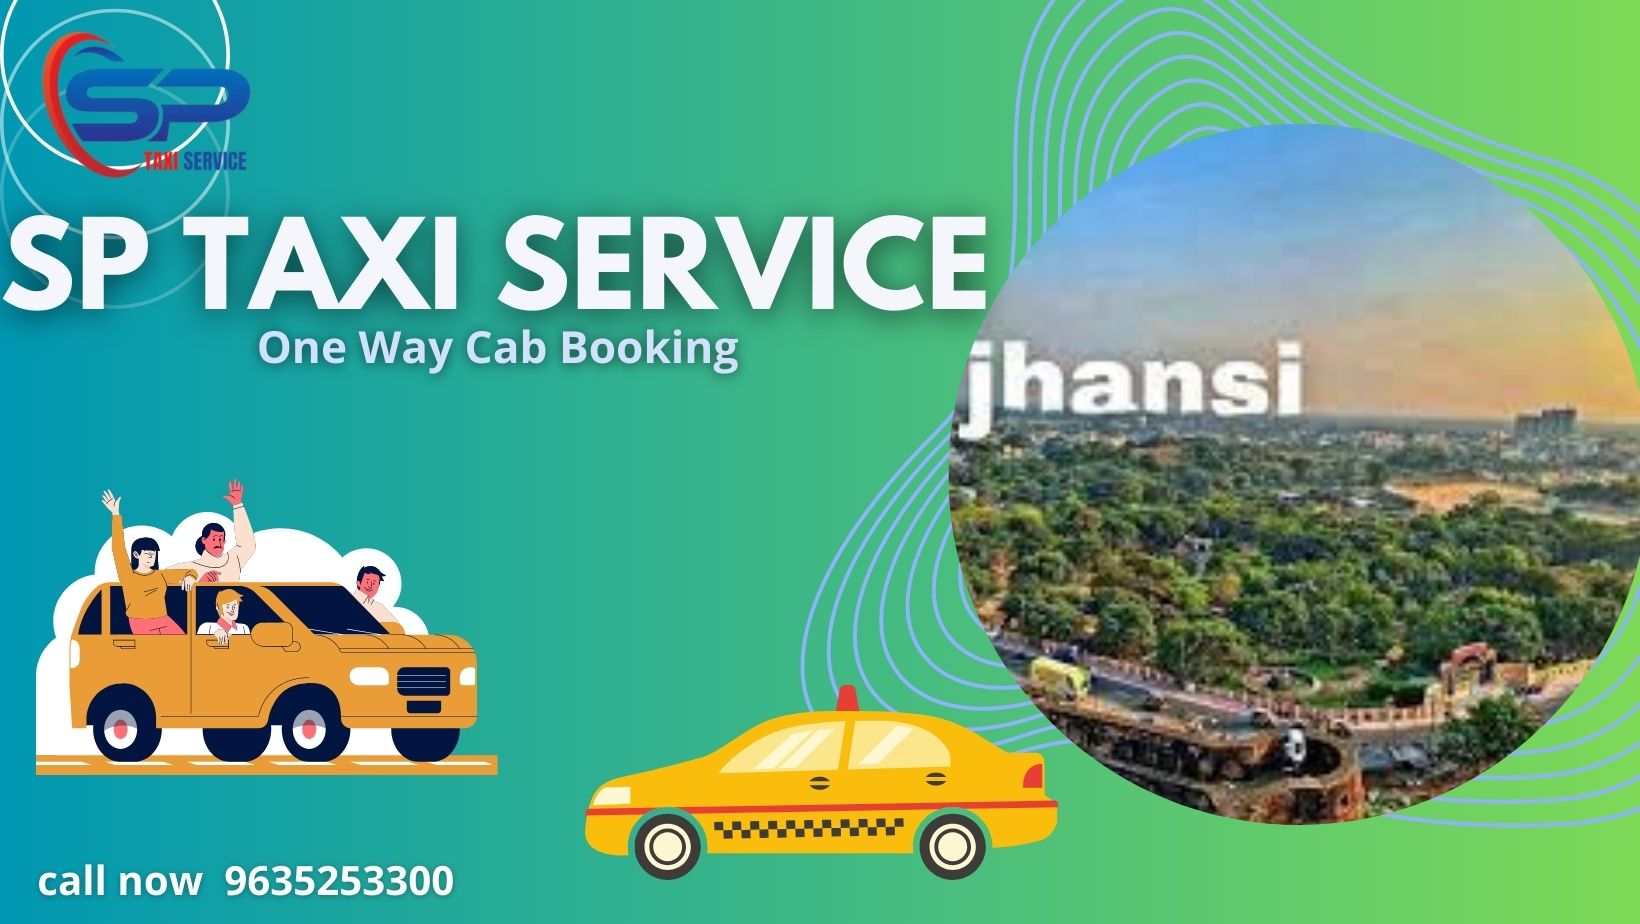 Jhansi Taxi service